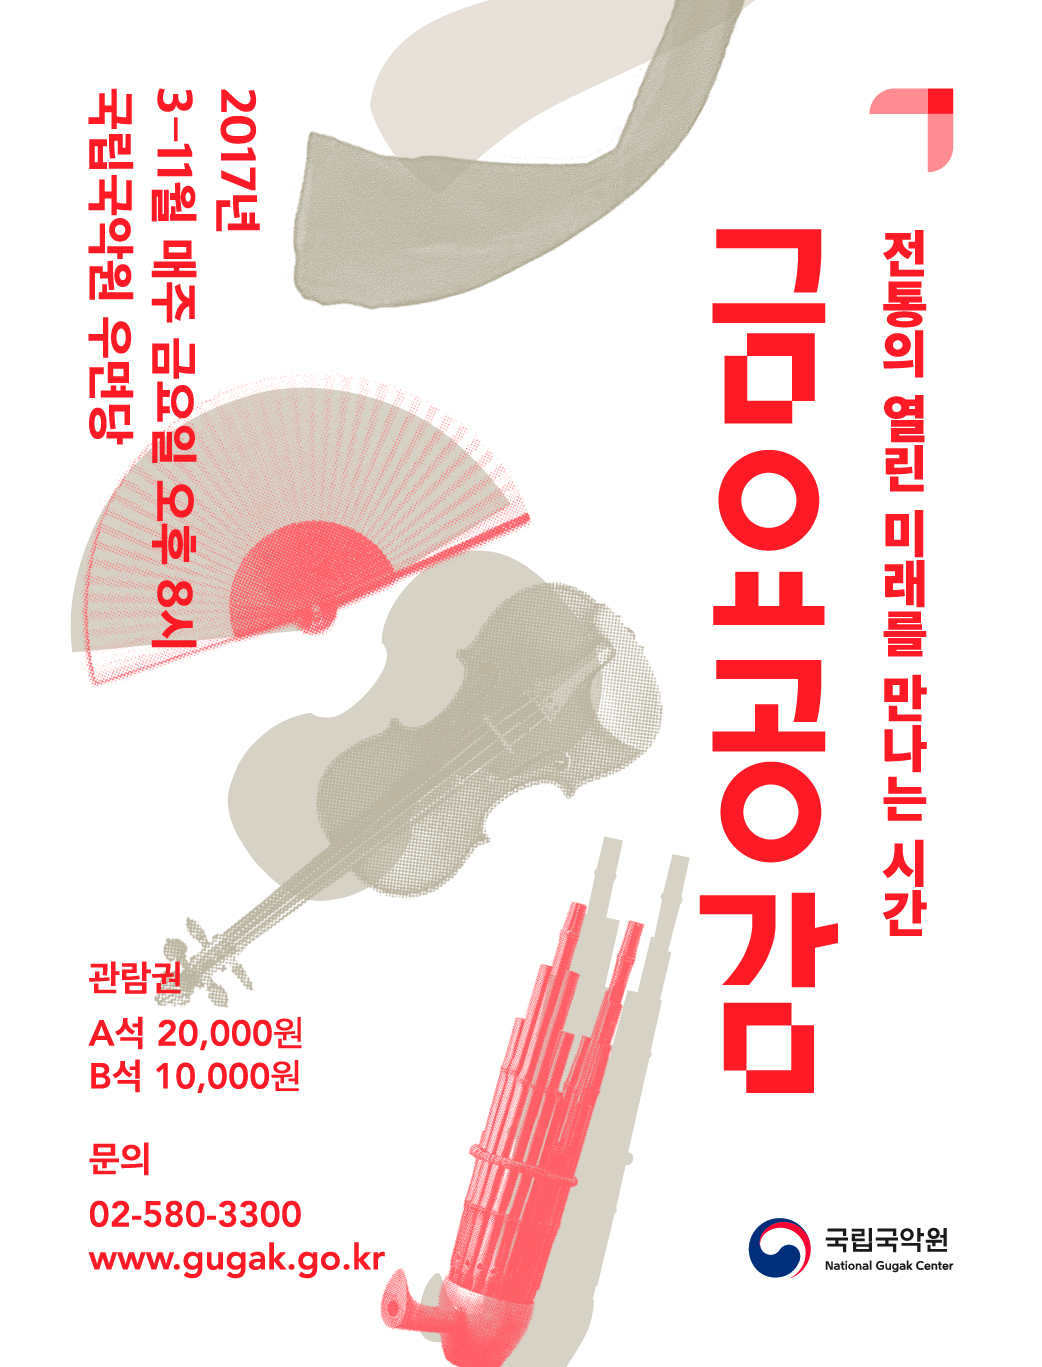 문화릴레이티켓 초대이벤트 국립국악원 '금요공감-1차'